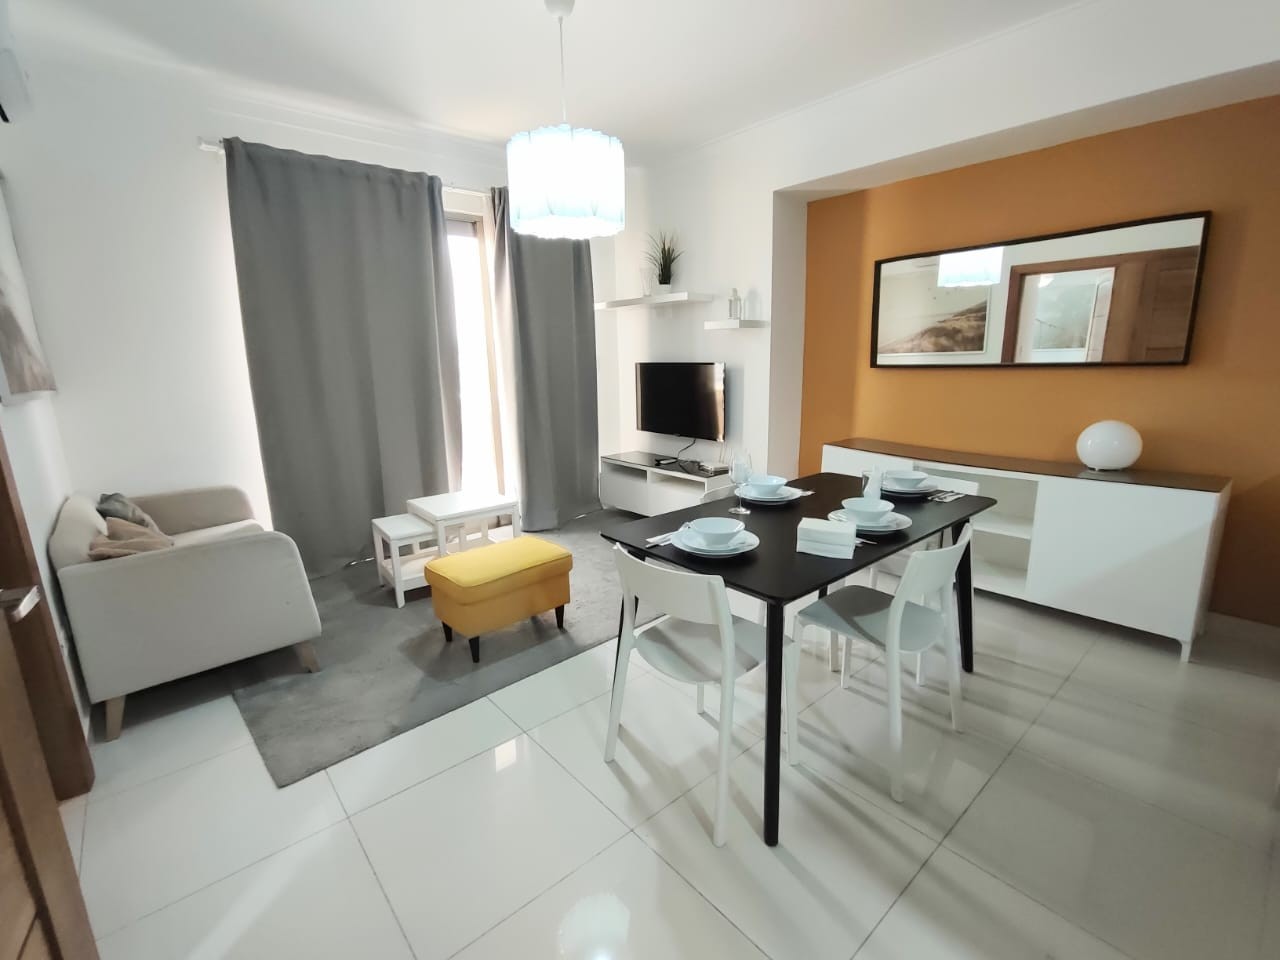 apartamentos - Apartamento en Venta Amueblado 
Mirador Norte
USD175,000
Mantenimiento:RD$6,000 8